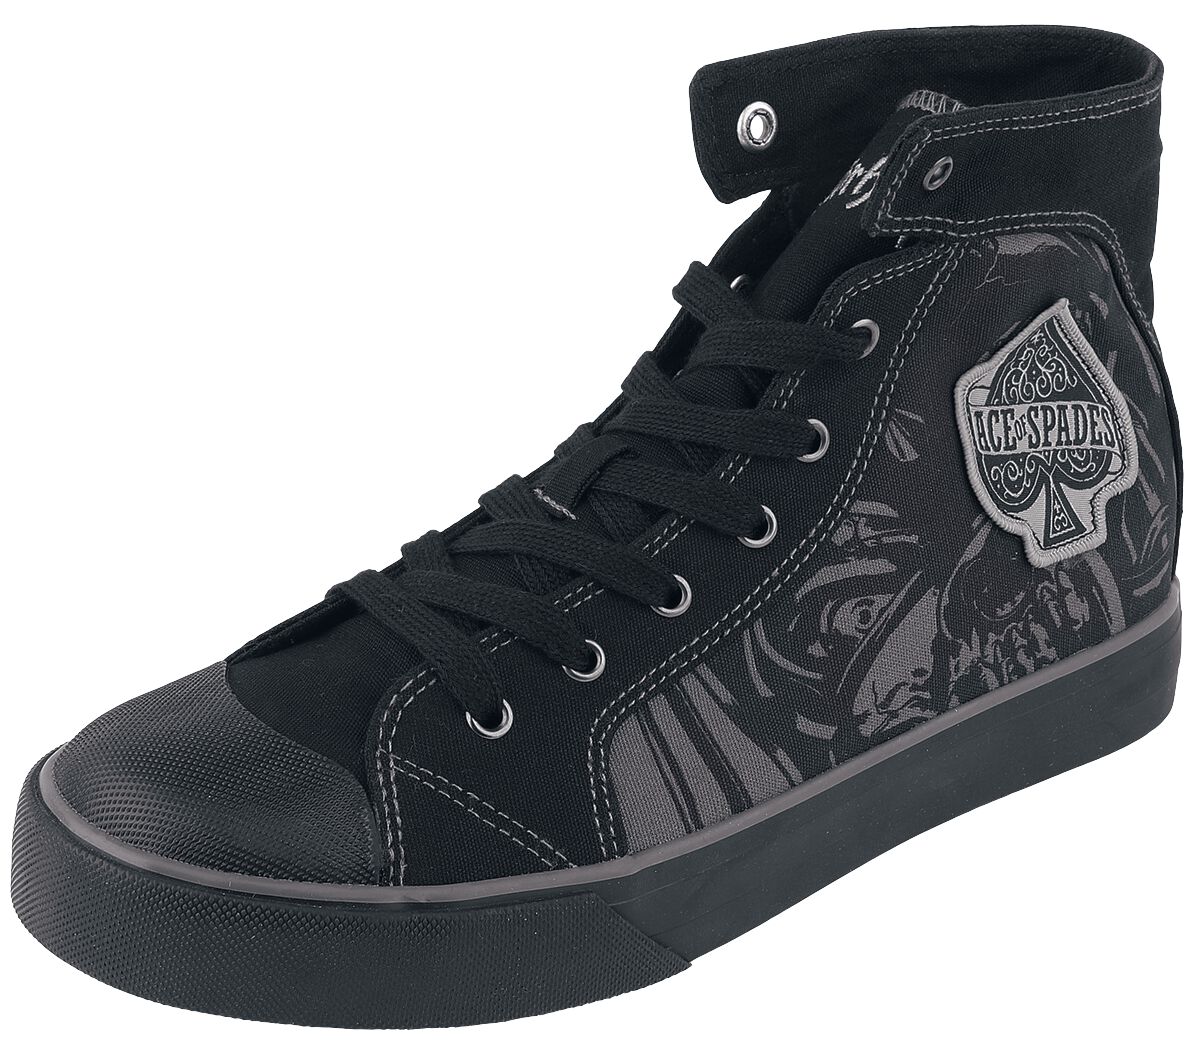 Motörhead Sneaker high - EMP Signature Collection - EU37 bis EU38 - Größe EU37 - schwarz  - EMP exklusives Merchandise!